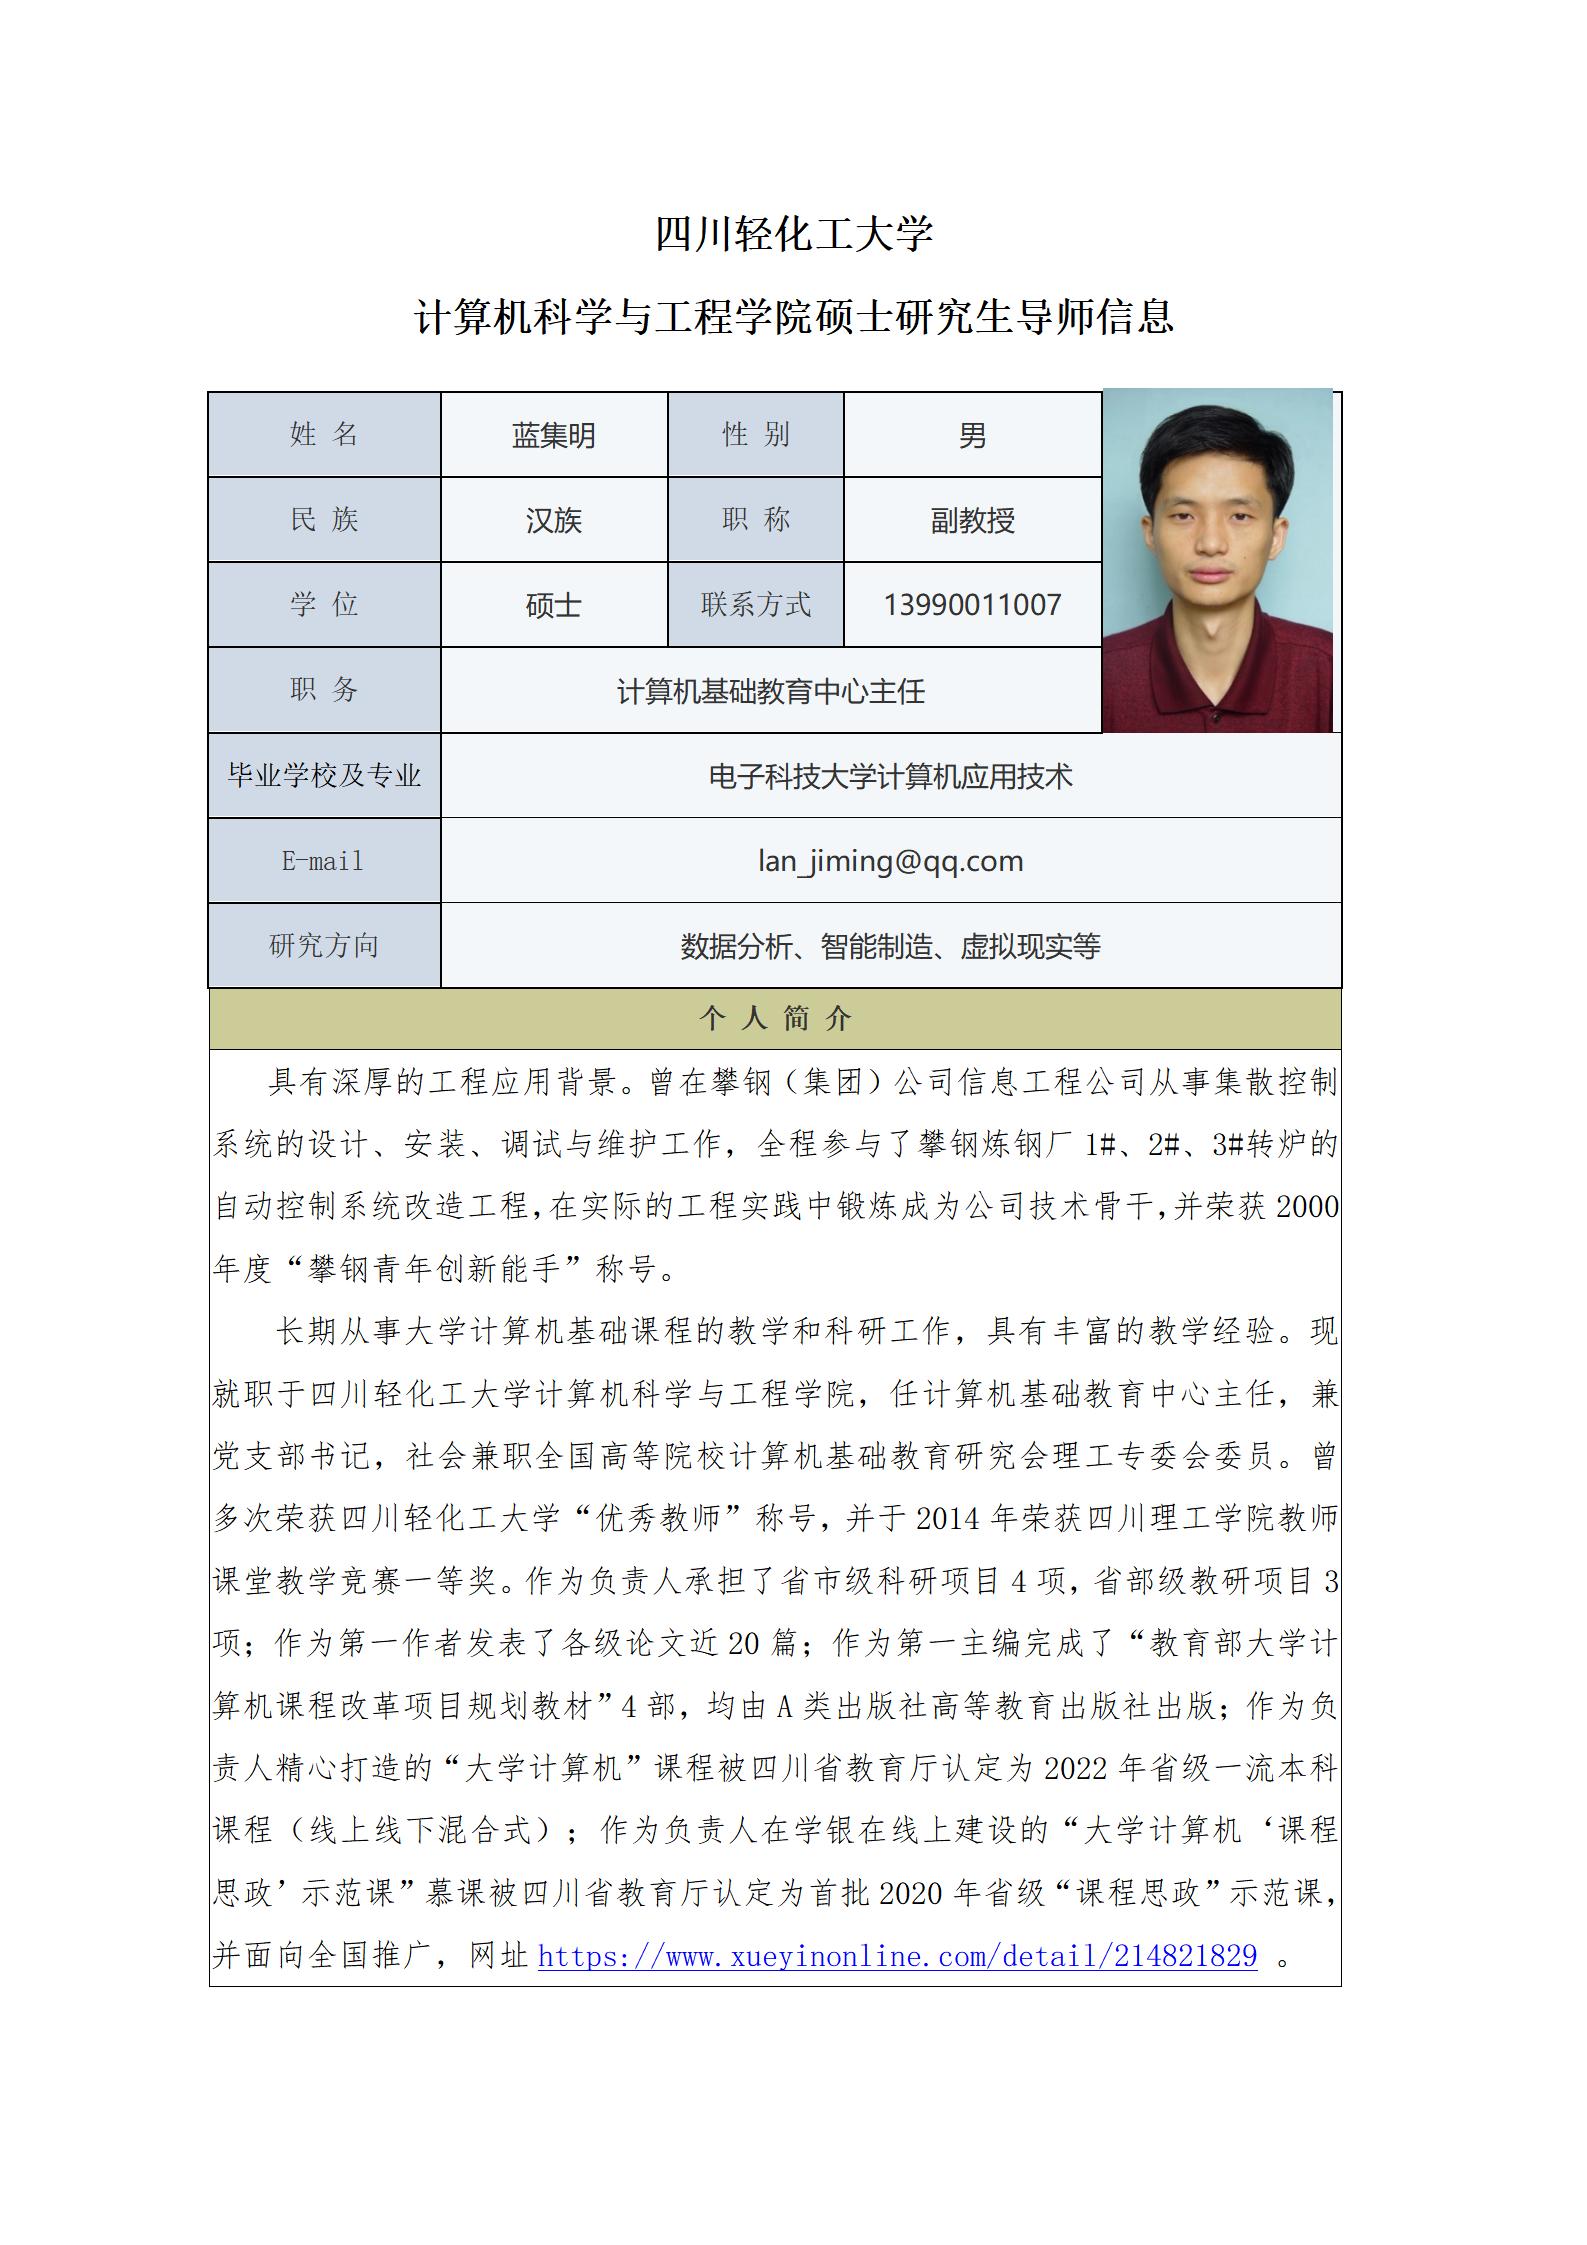 蓝集明-2023计算机科学与工程学院硕士生导师信息表_01.jpg